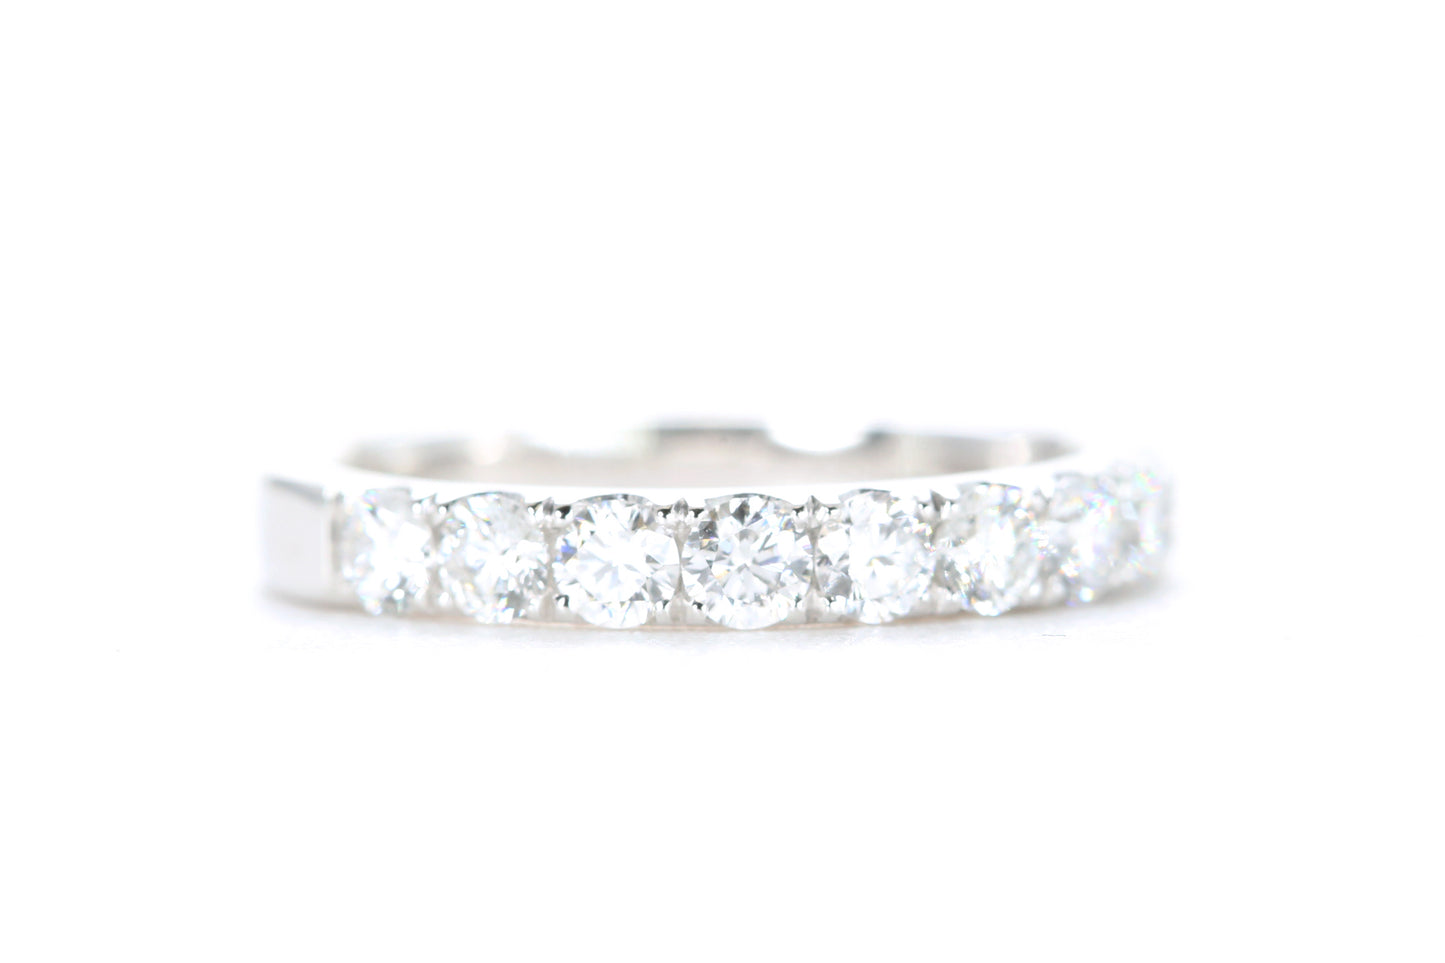 Micro Pavé Diamond Ring One Carat in Platinum